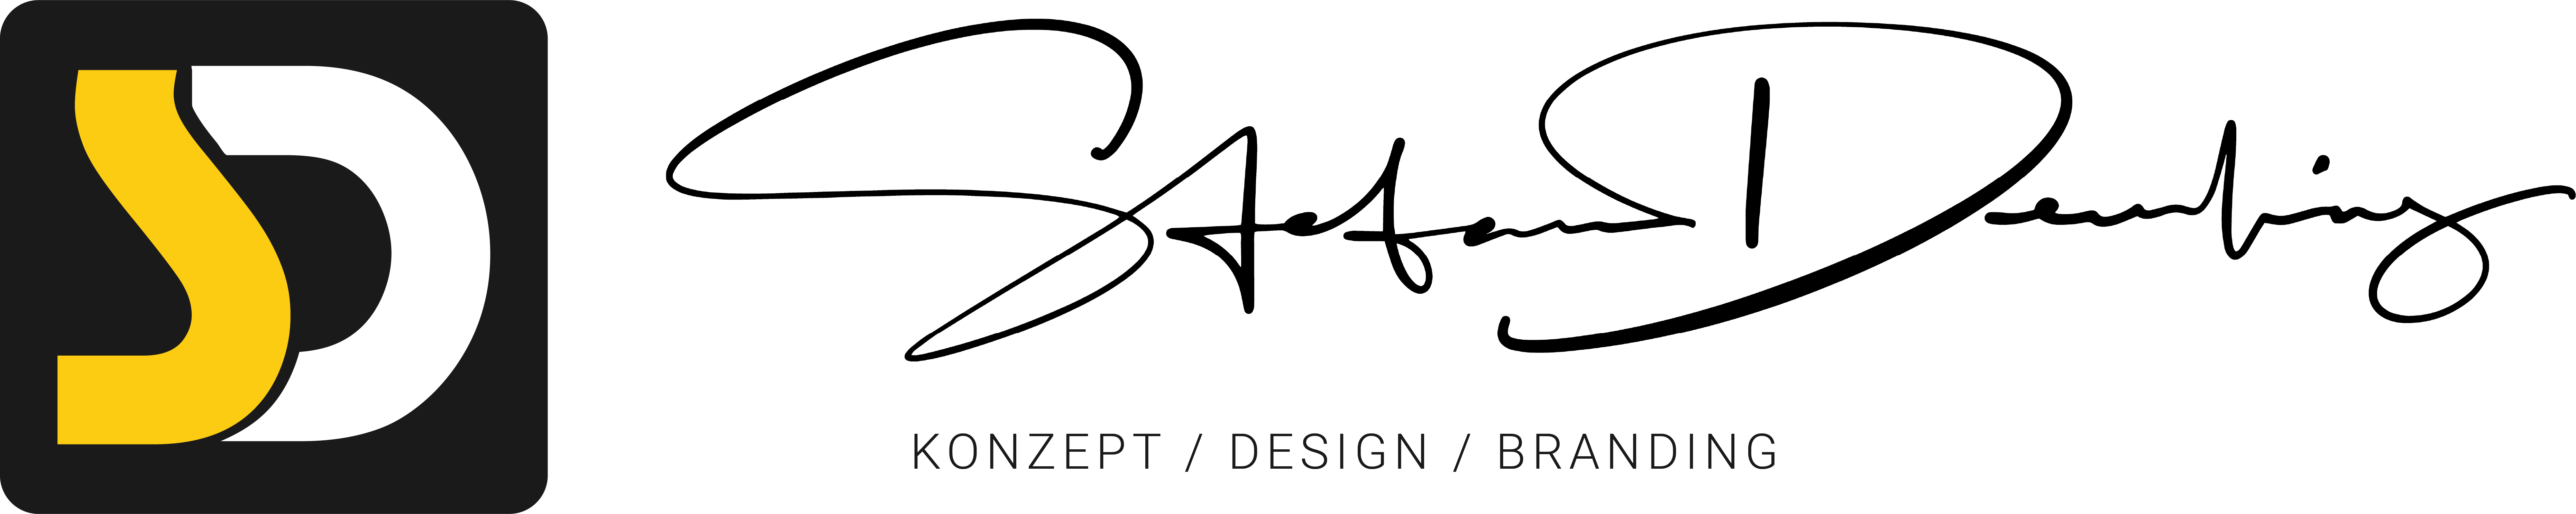 Stefan Deuerling - Konzept, Design & Branding